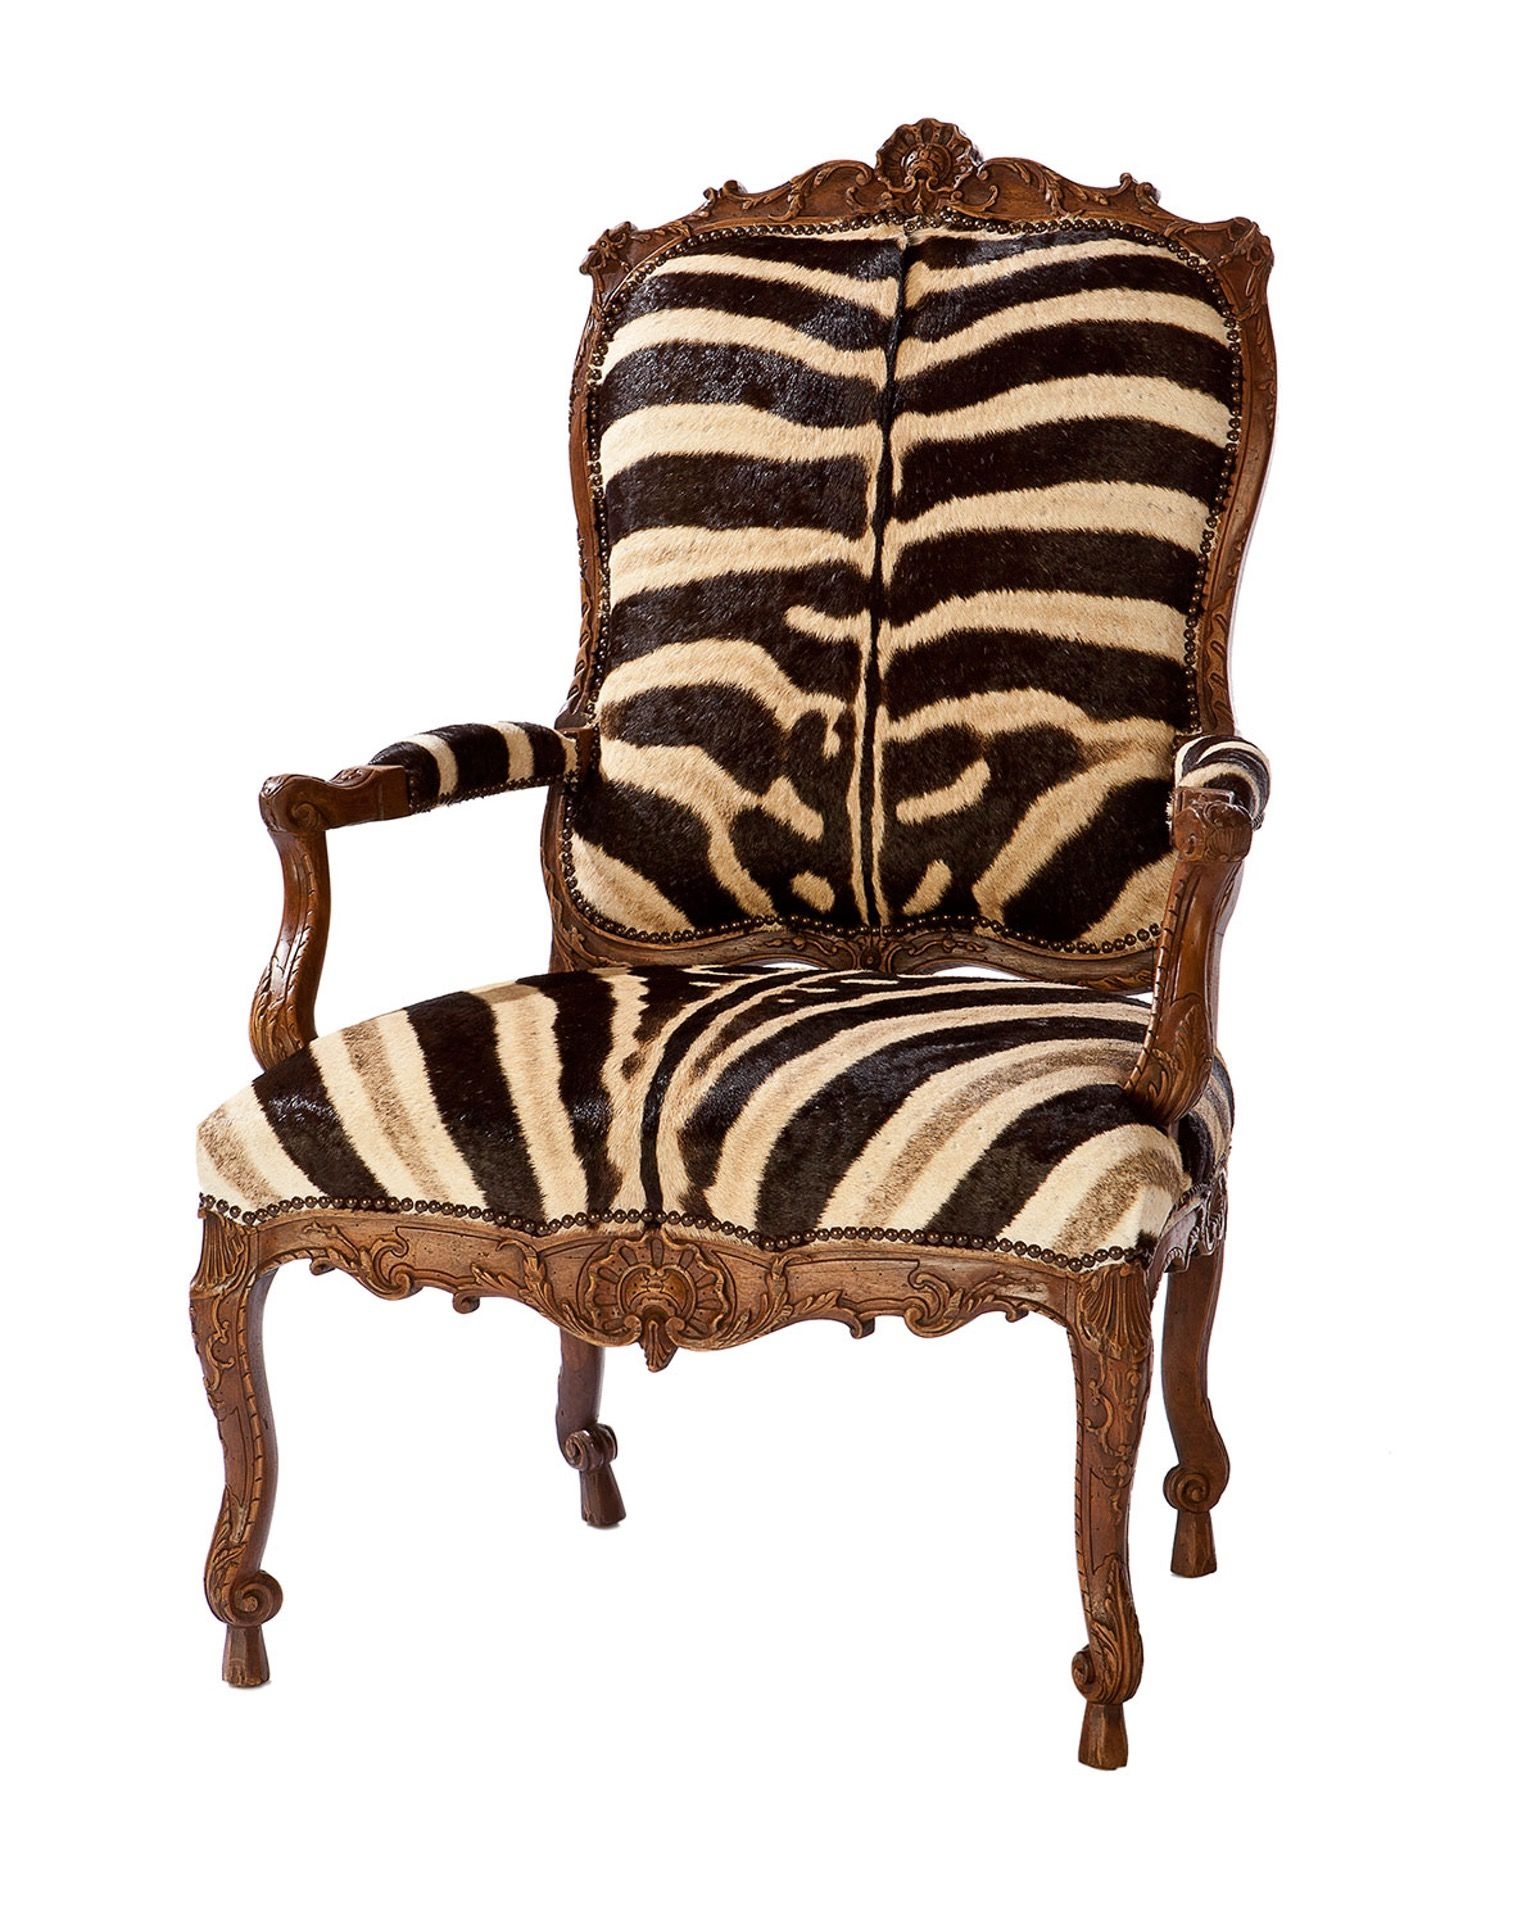 Zebra arm chairs